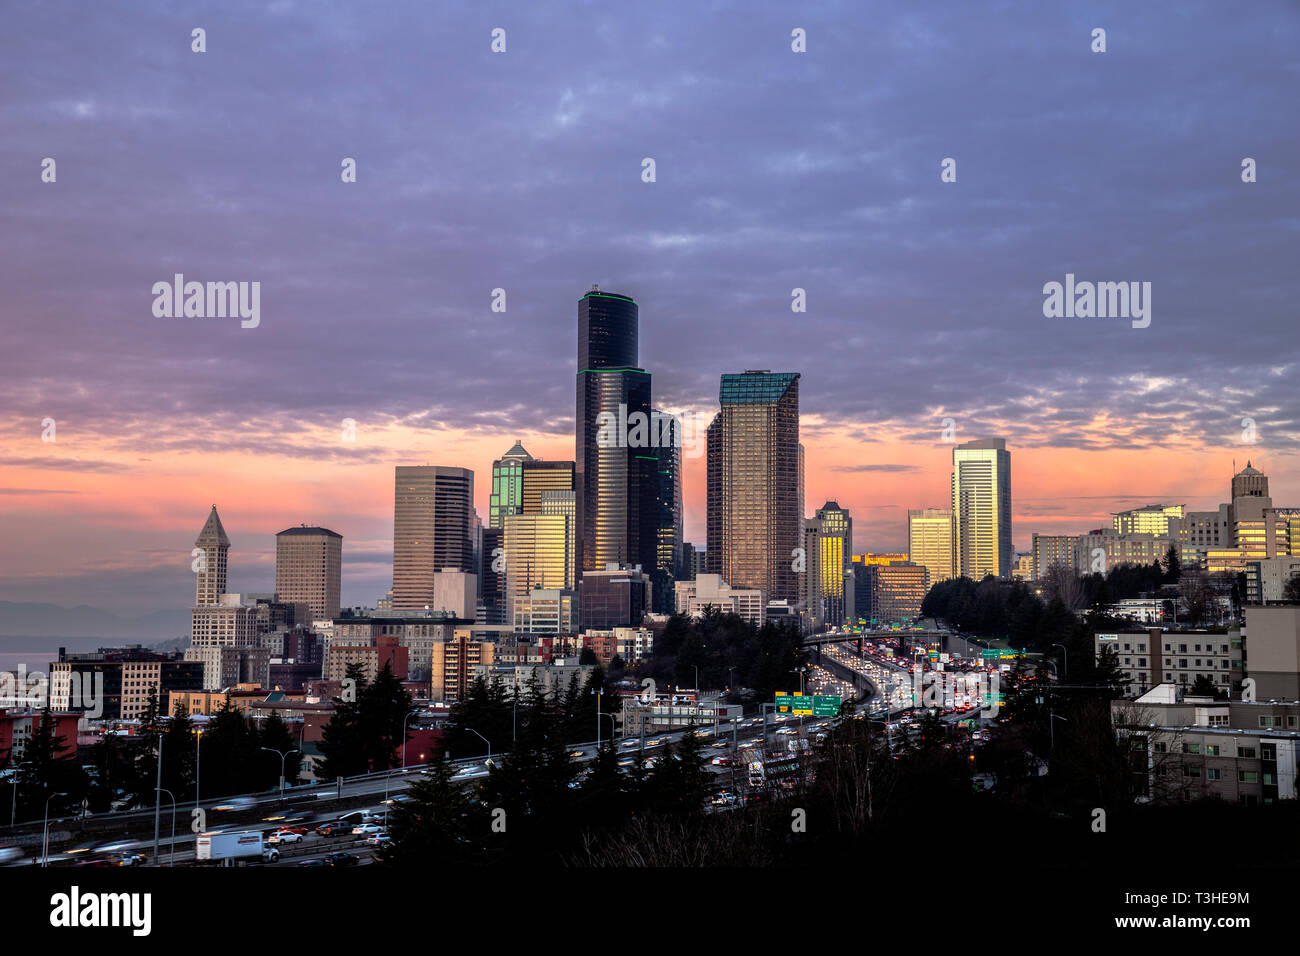 WA17082-00...WASHINGTON - la città di Seattle e Interstate 5 a sunrise viewsd dal Dott. Jose Rizal ponte sulla 12 Avenue South. Foto Stock